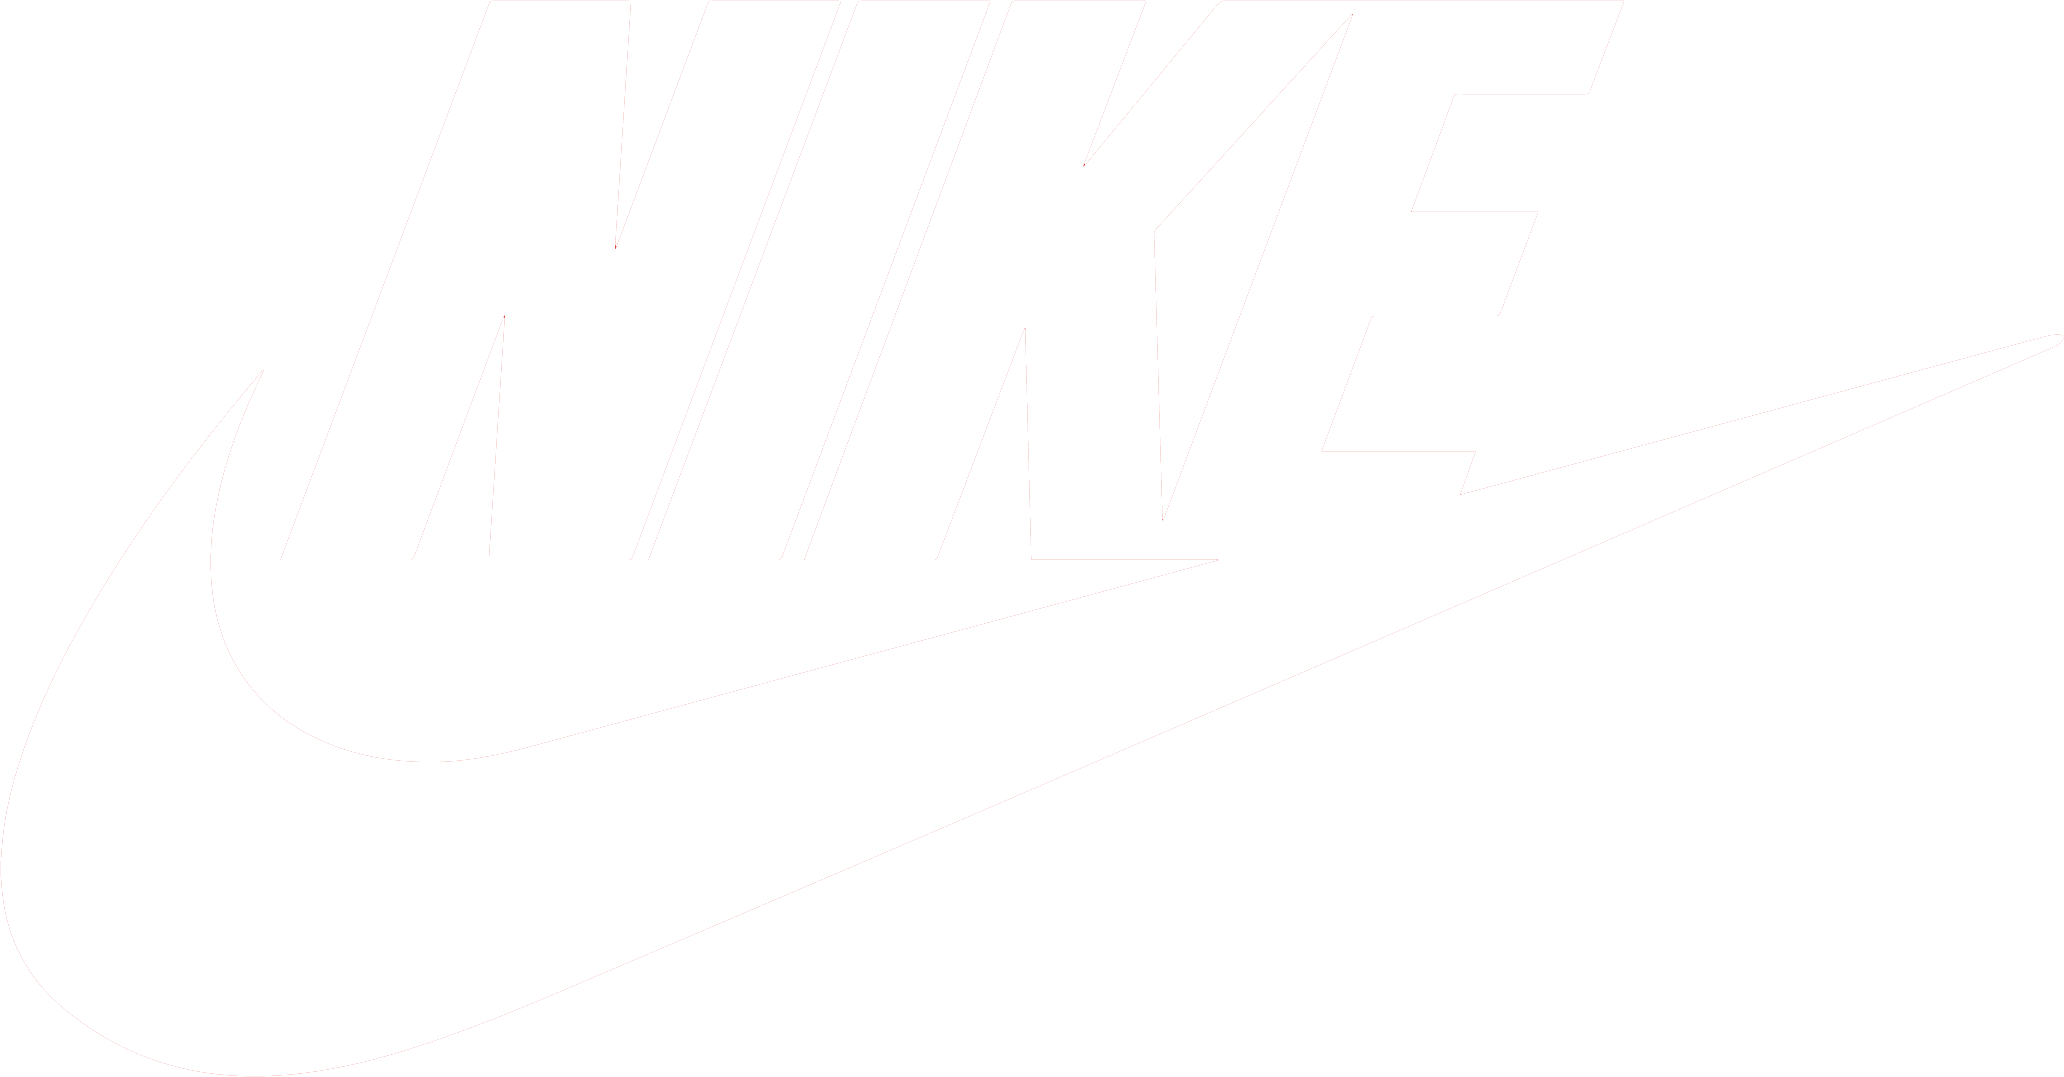 Niike Logo - Nike logo PNG image free download